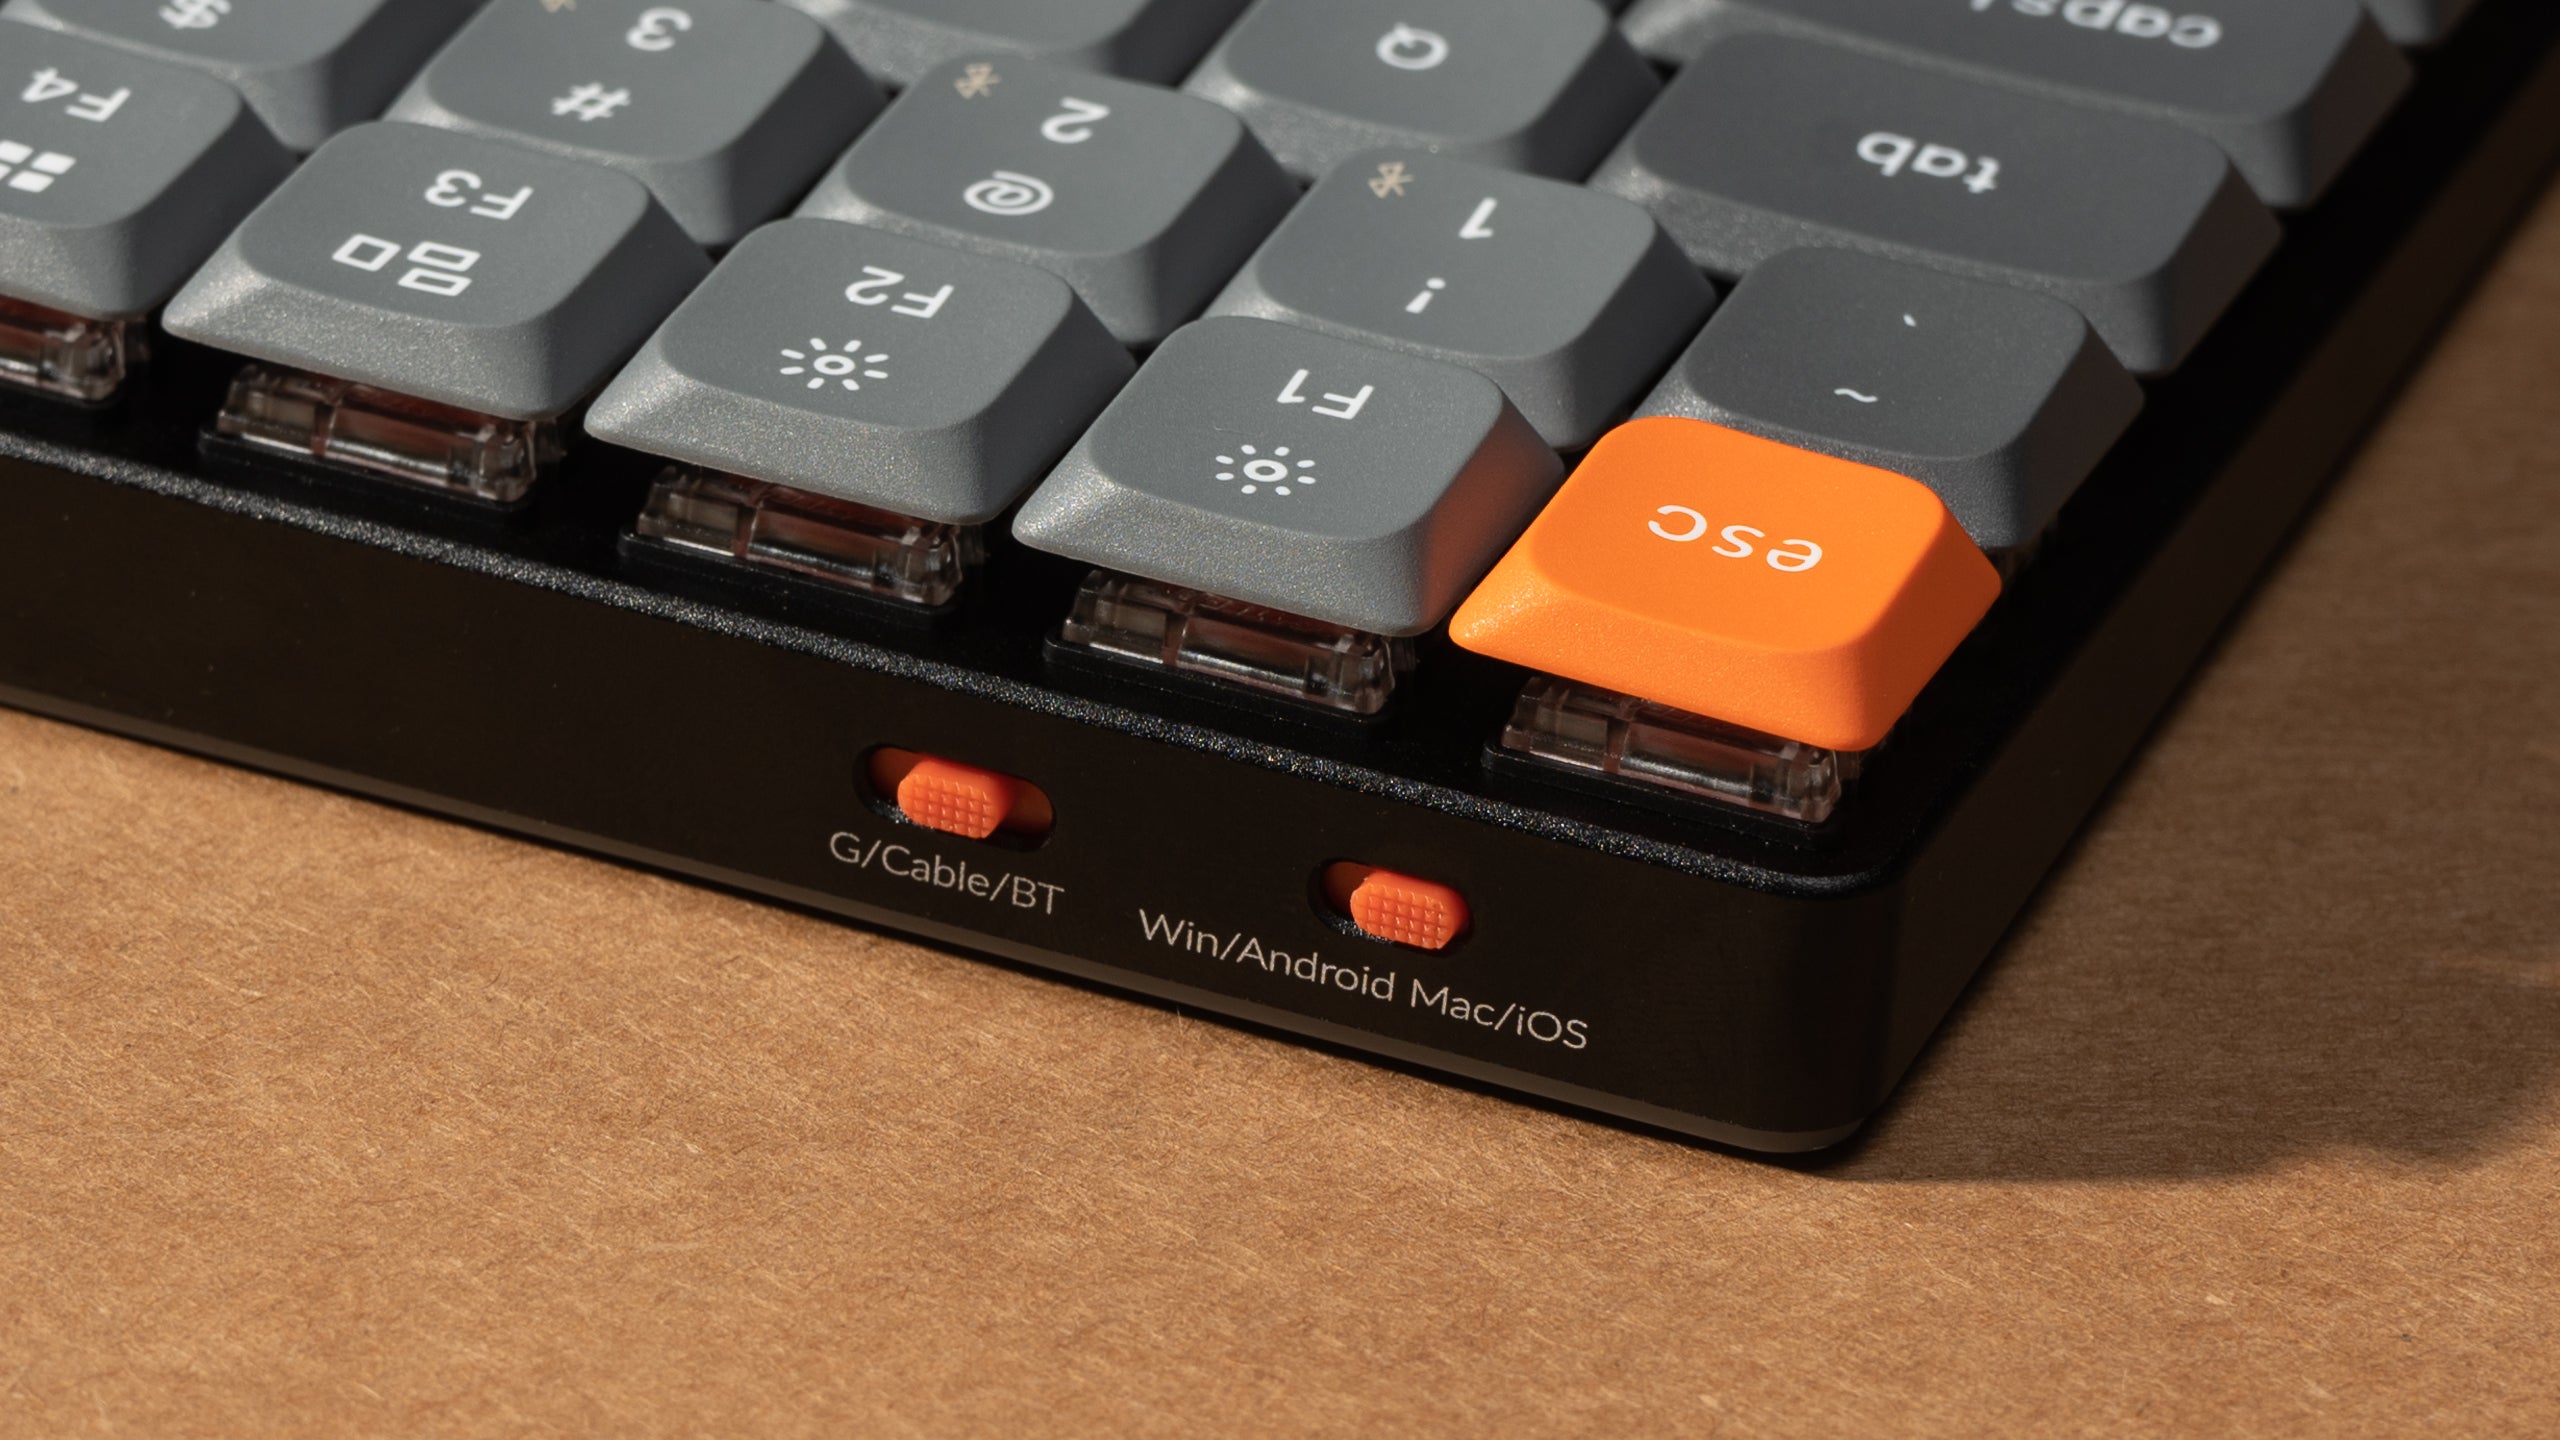 Keychron-K3-Max-wireless-mechanical-keyboard